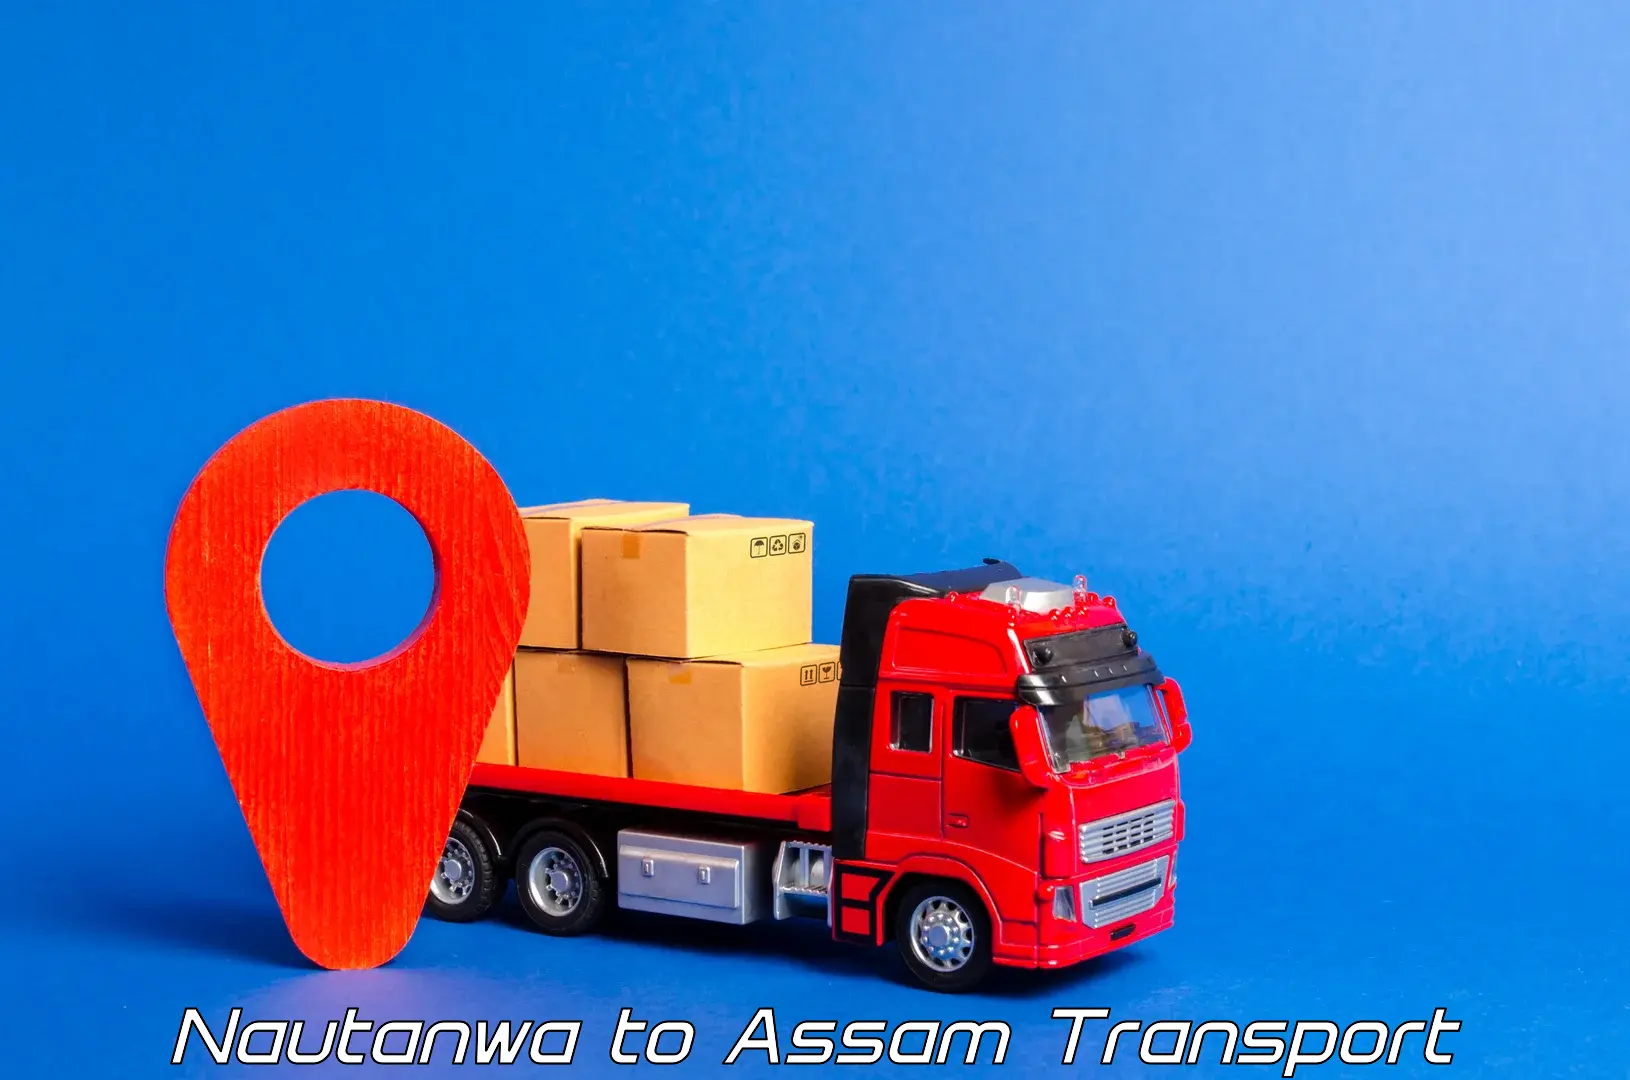 Transport shared services Nautanwa to Bhergaon